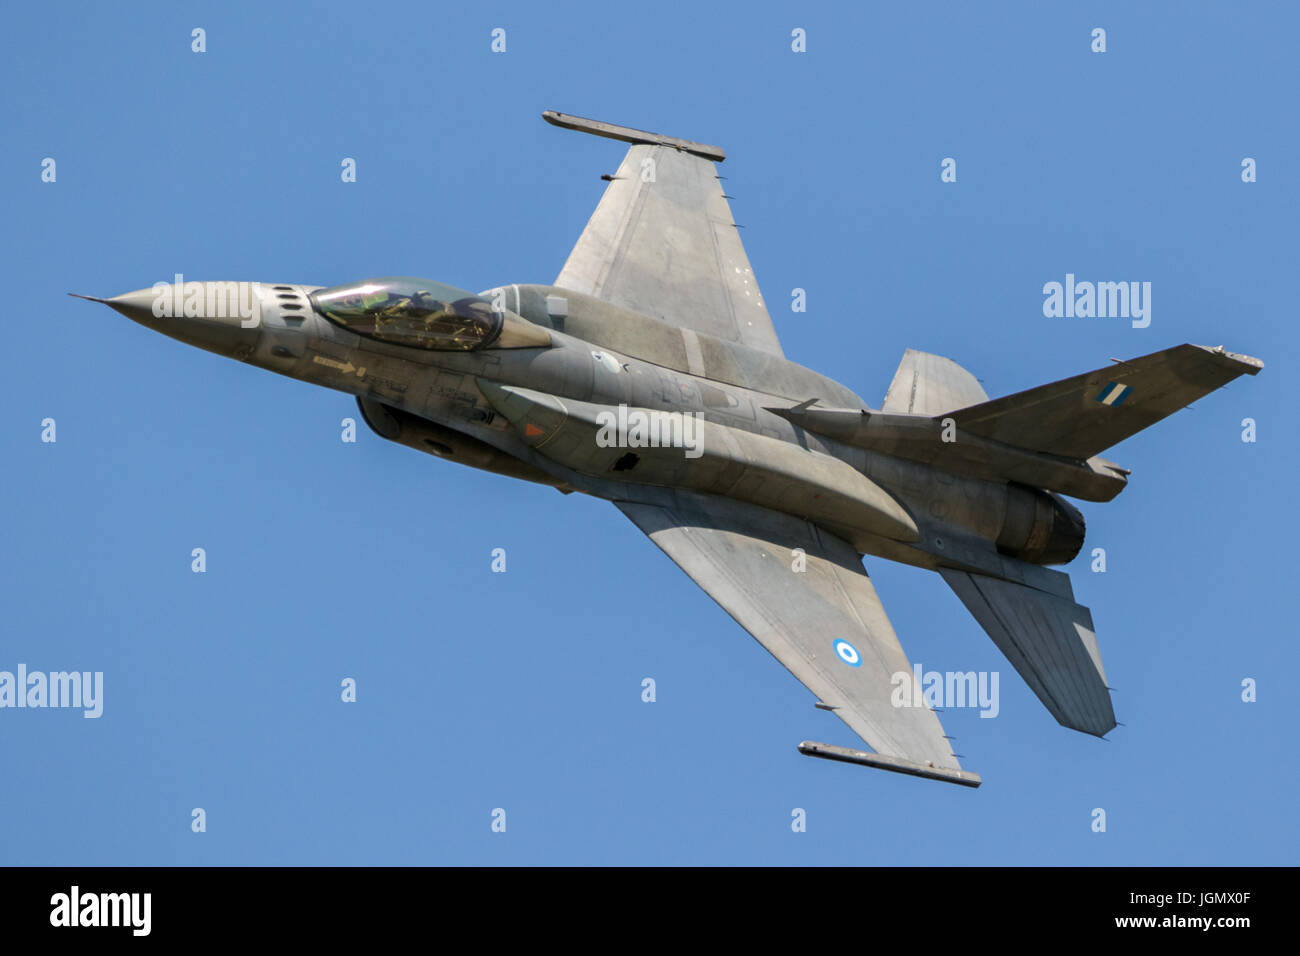 LARISSA, Grecia - 4 Maggio 2017: Hellenic Air Force F-16 volo jet su un cielo blu chiaro giorno. Foto Stock